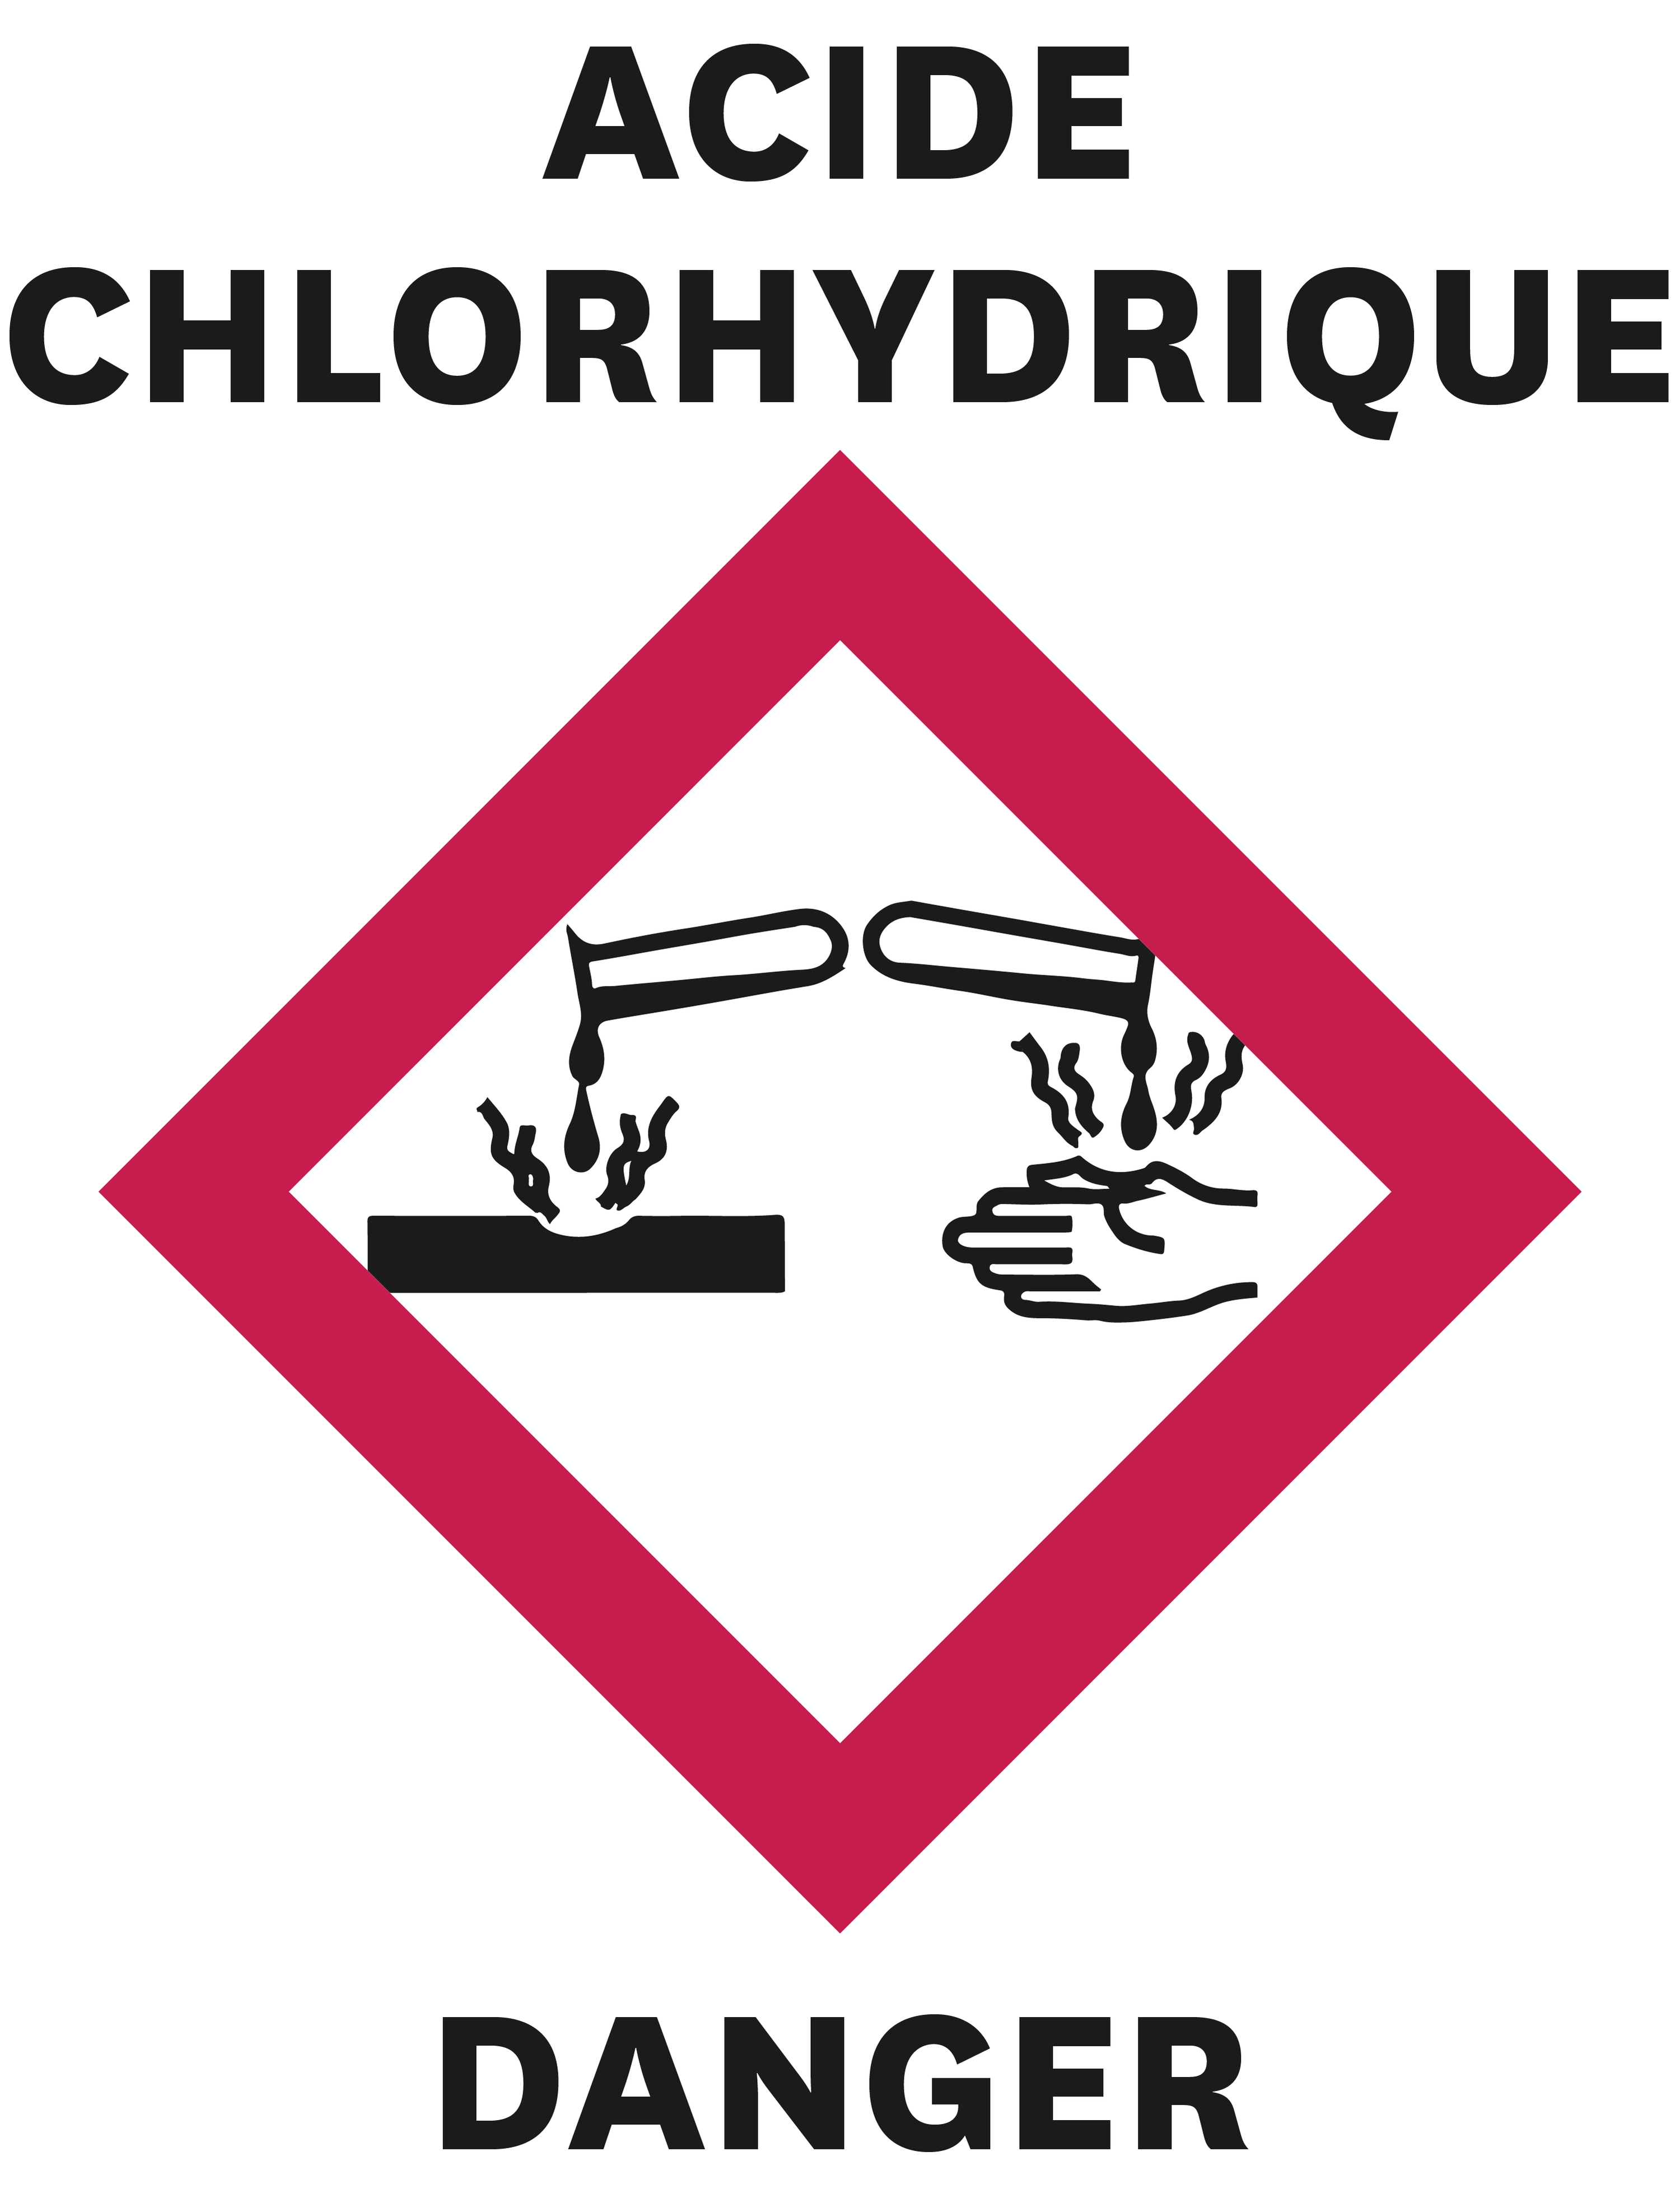 Acide chlorhydrique, danger !